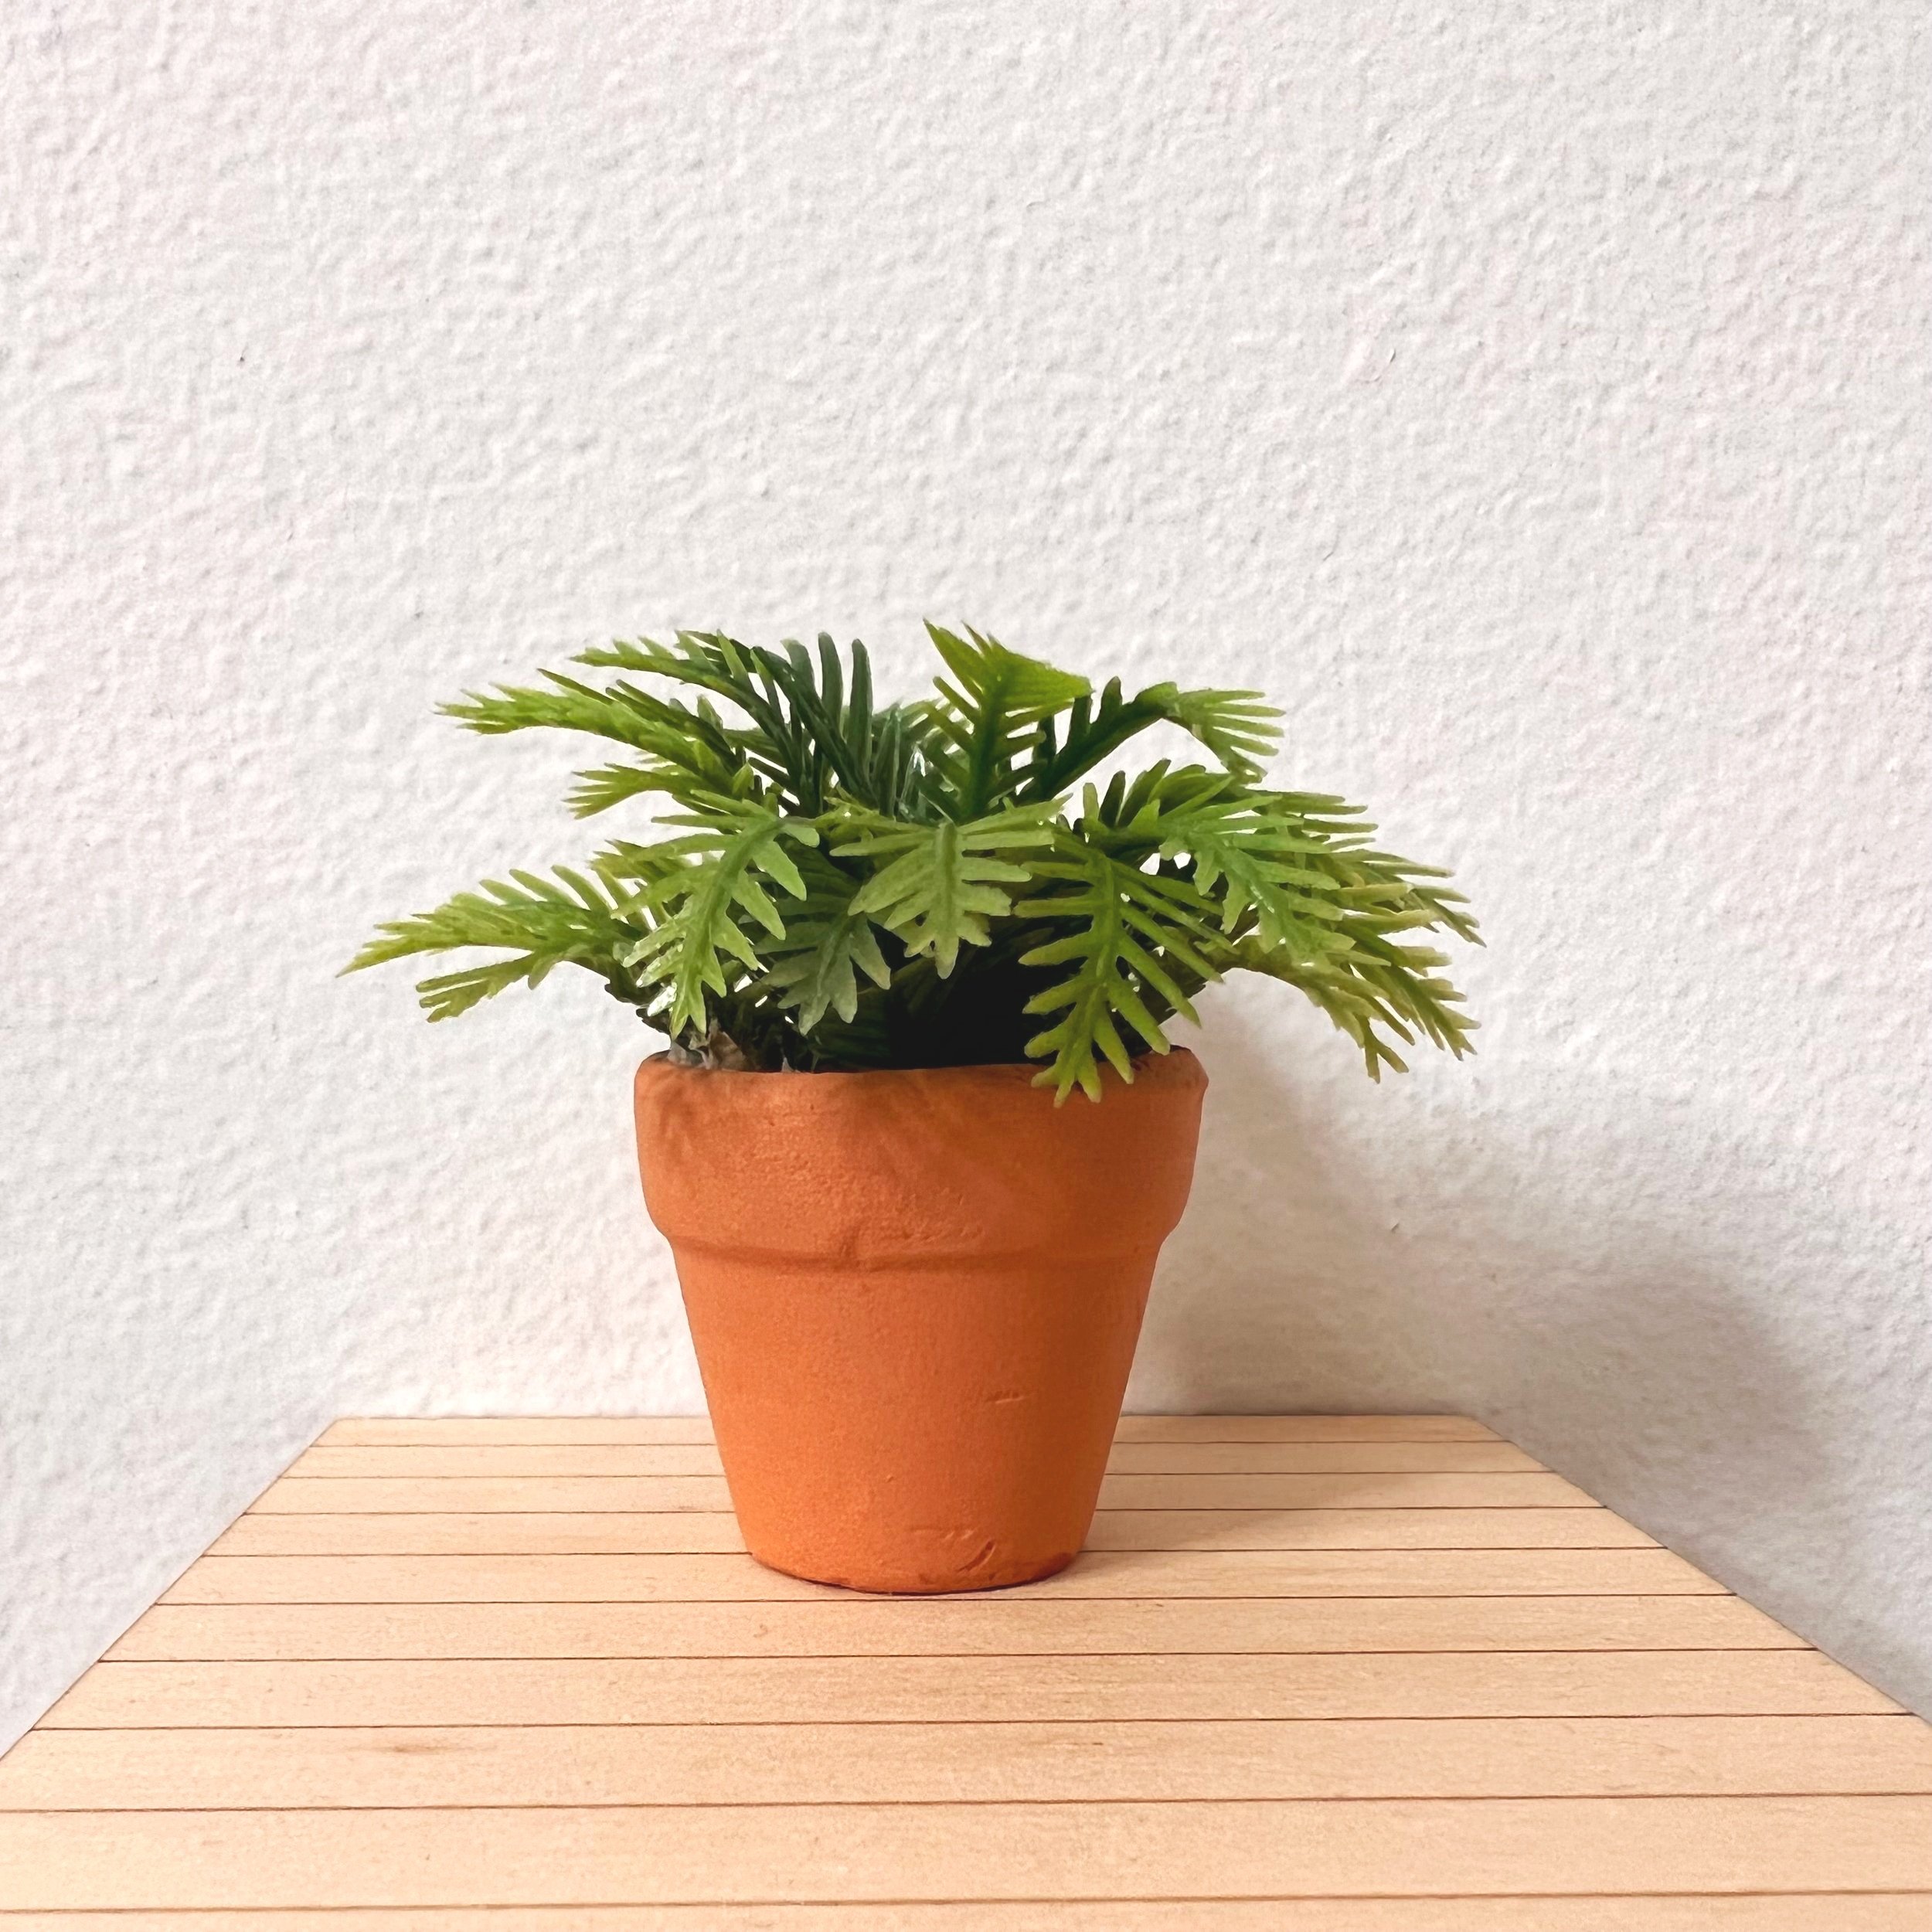 Plant in Pot 1/12 scale dollhouse miniature 2314-21 fern 